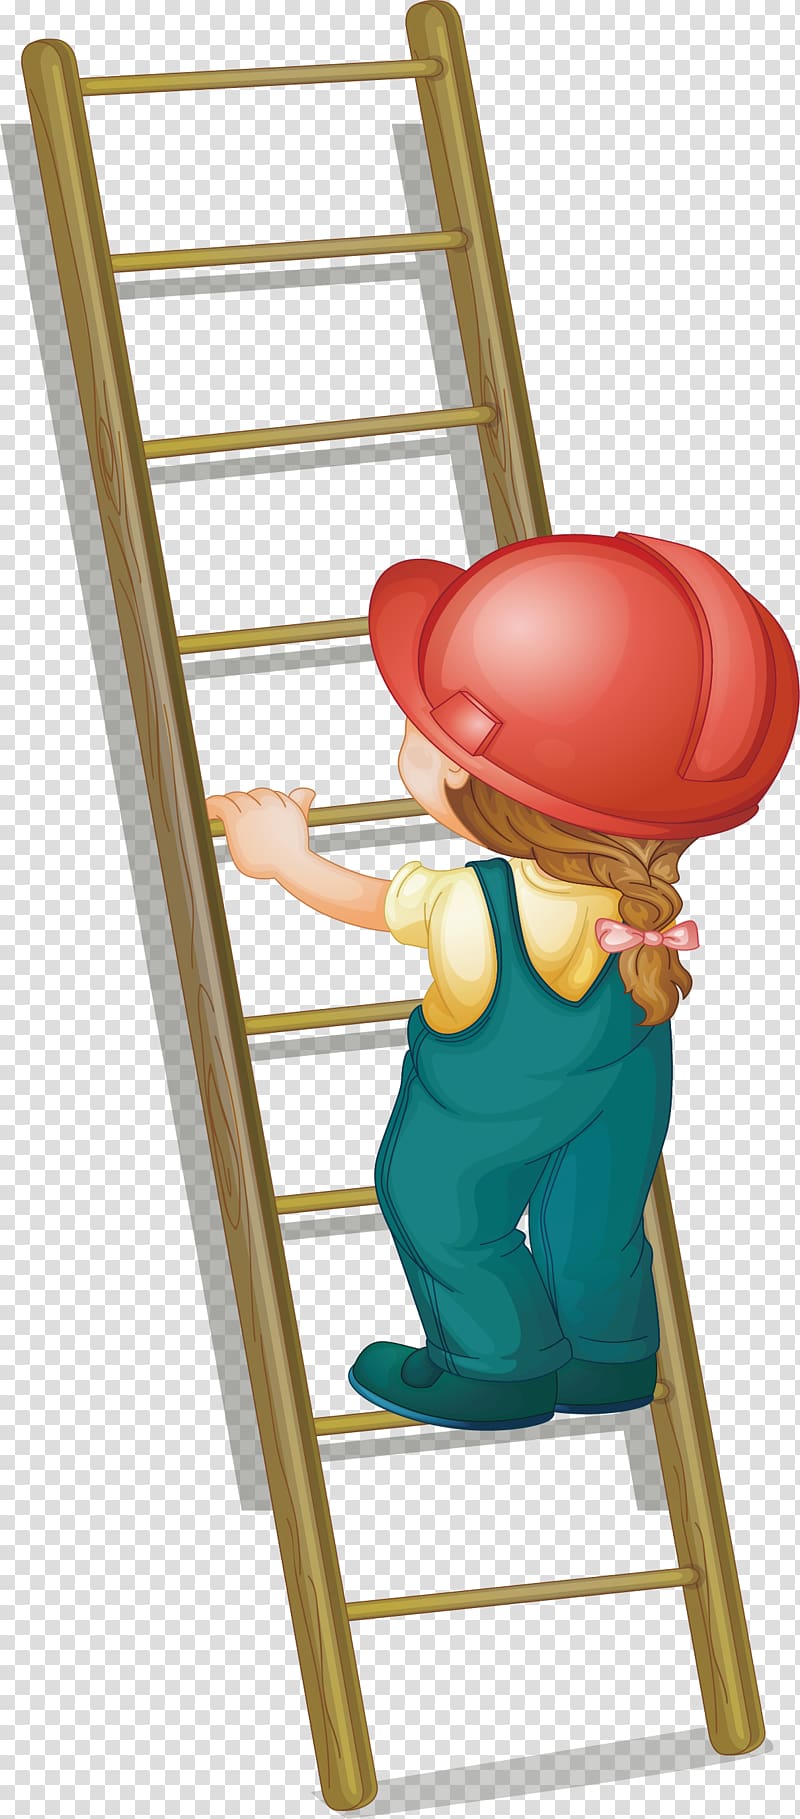 Ladder Illustration, Step on the ladder up transparent